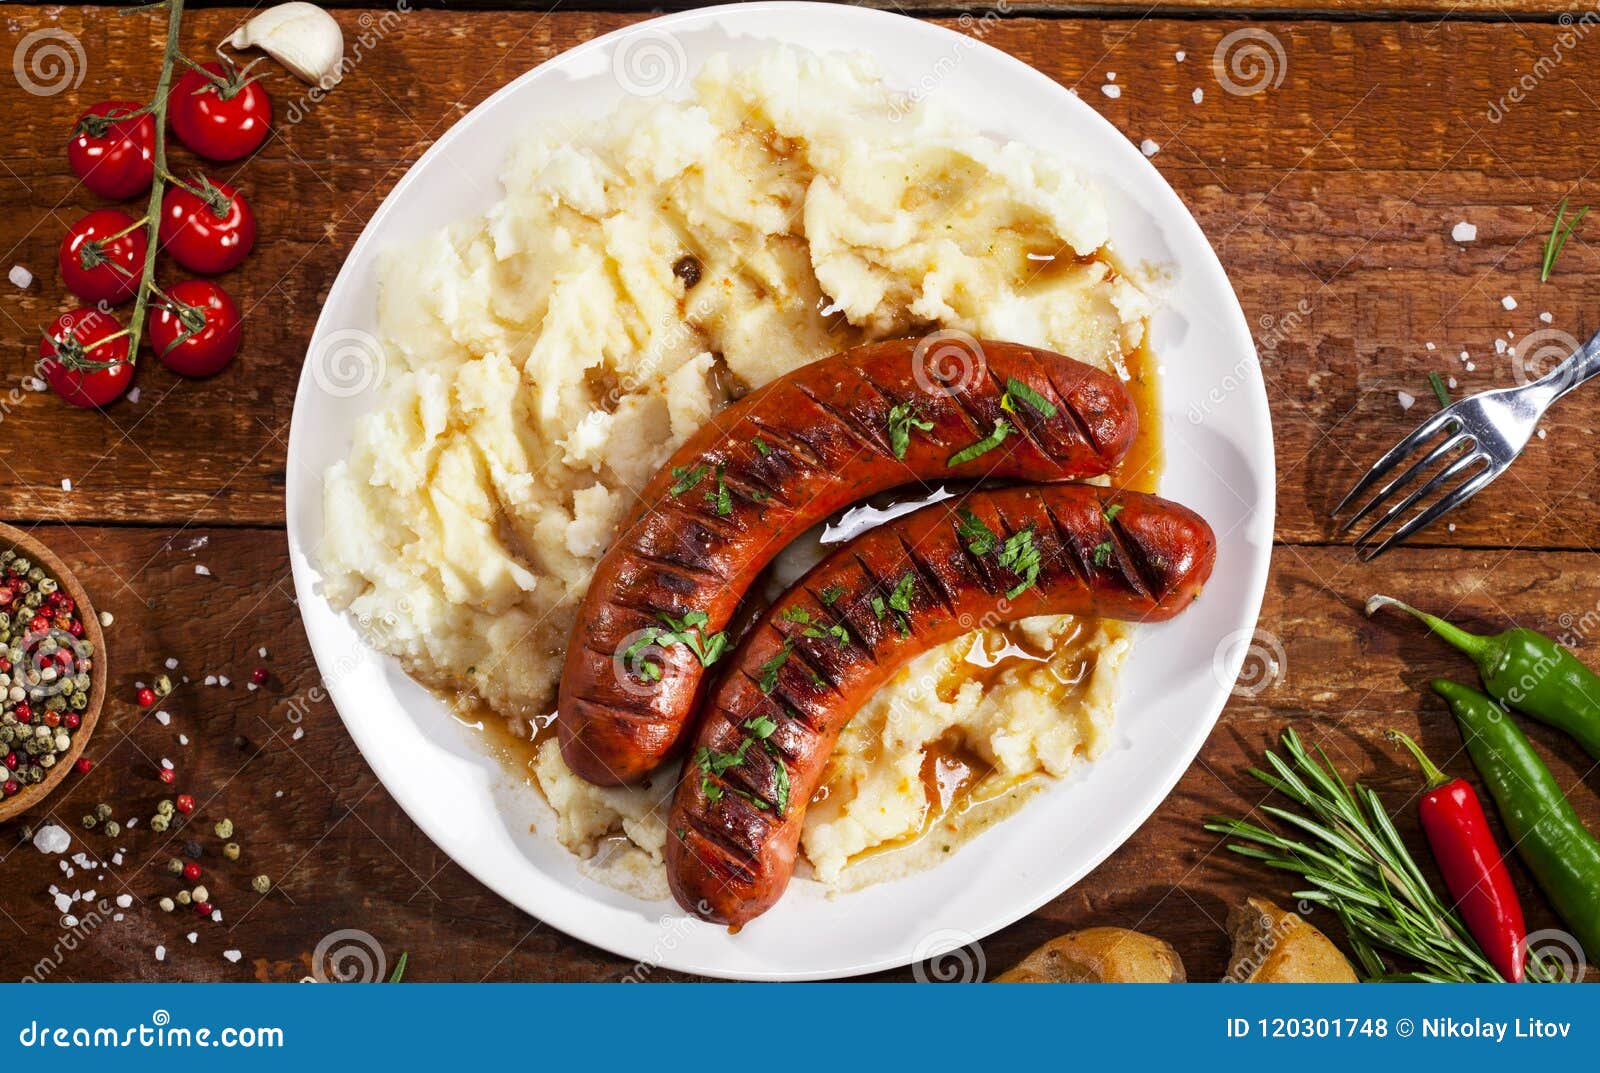 香肠和土豆泥是传统的英式菜谱 库存照片. 图片 包括有 午餐, 星期天, 洋葱, 系列, 烹调, 小汤 - 192481426